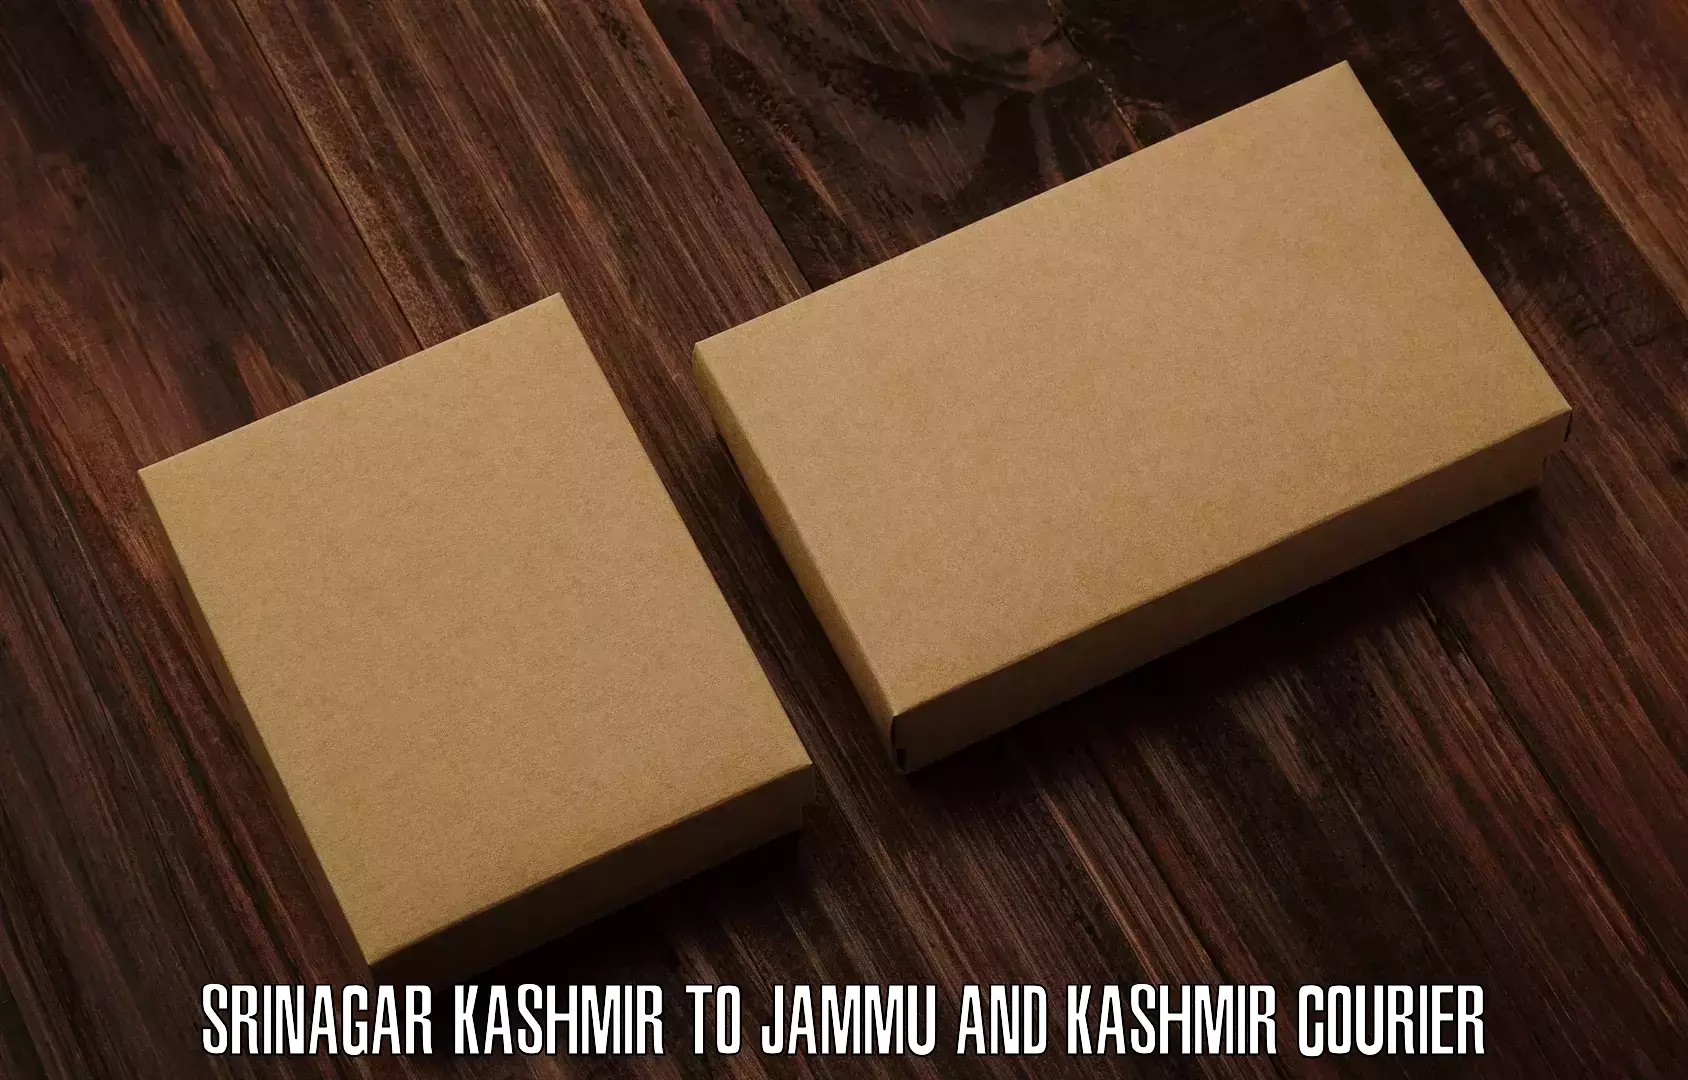 Customer-centric shipping Srinagar Kashmir to Kargil